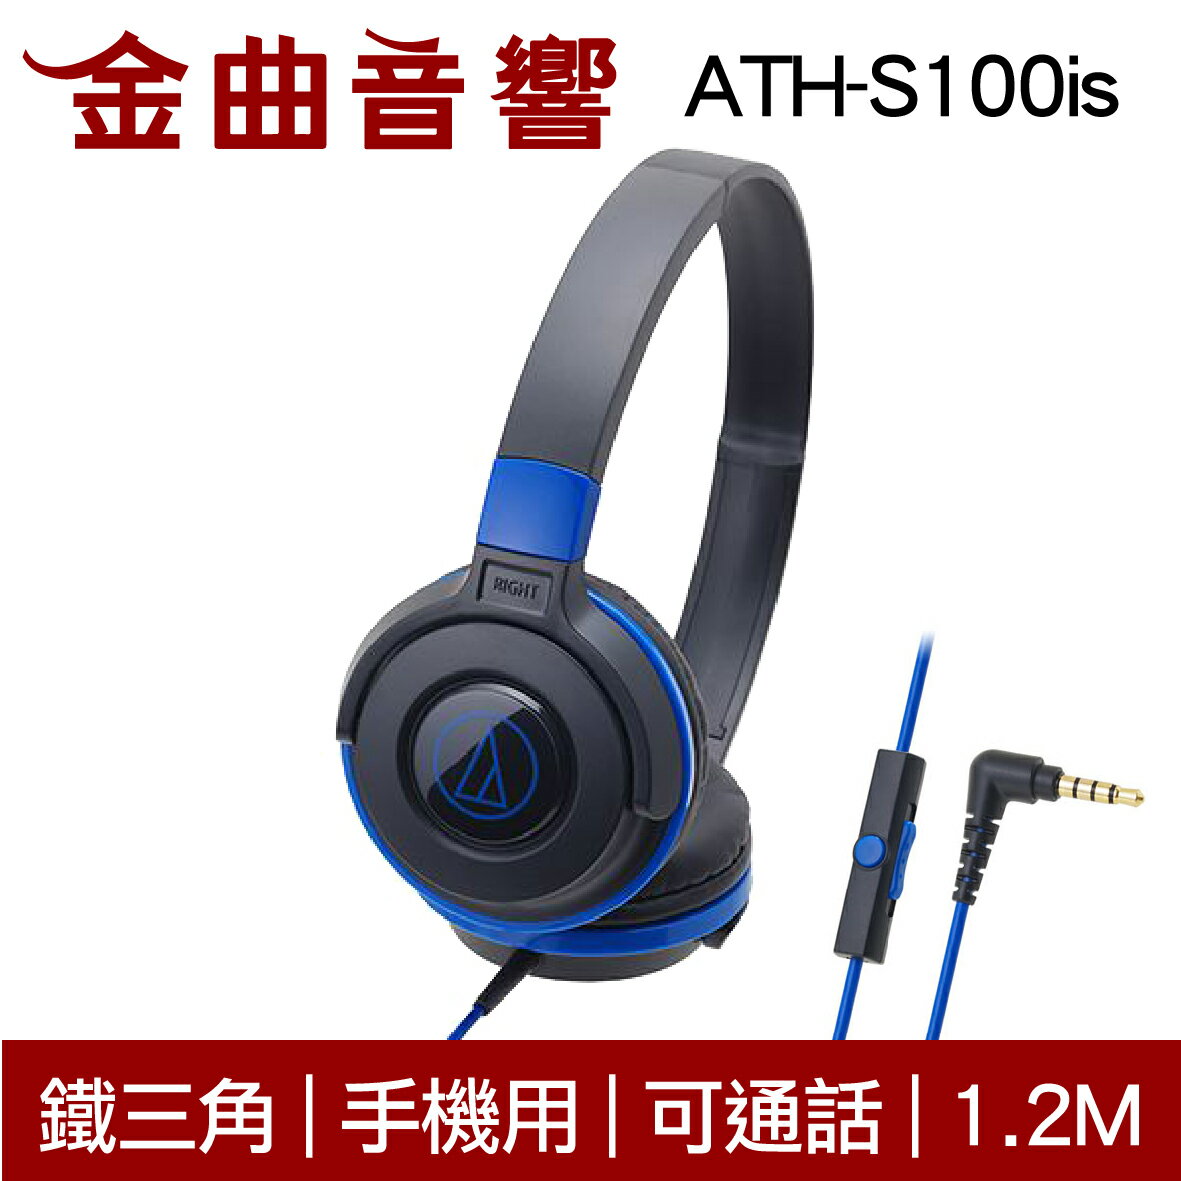 鐵三角 ATH-S100is 兒童耳機 大人 皆適用 黑藍色 耳罩式耳機 麥克風版 IOS/安卓適用 | 金曲音響